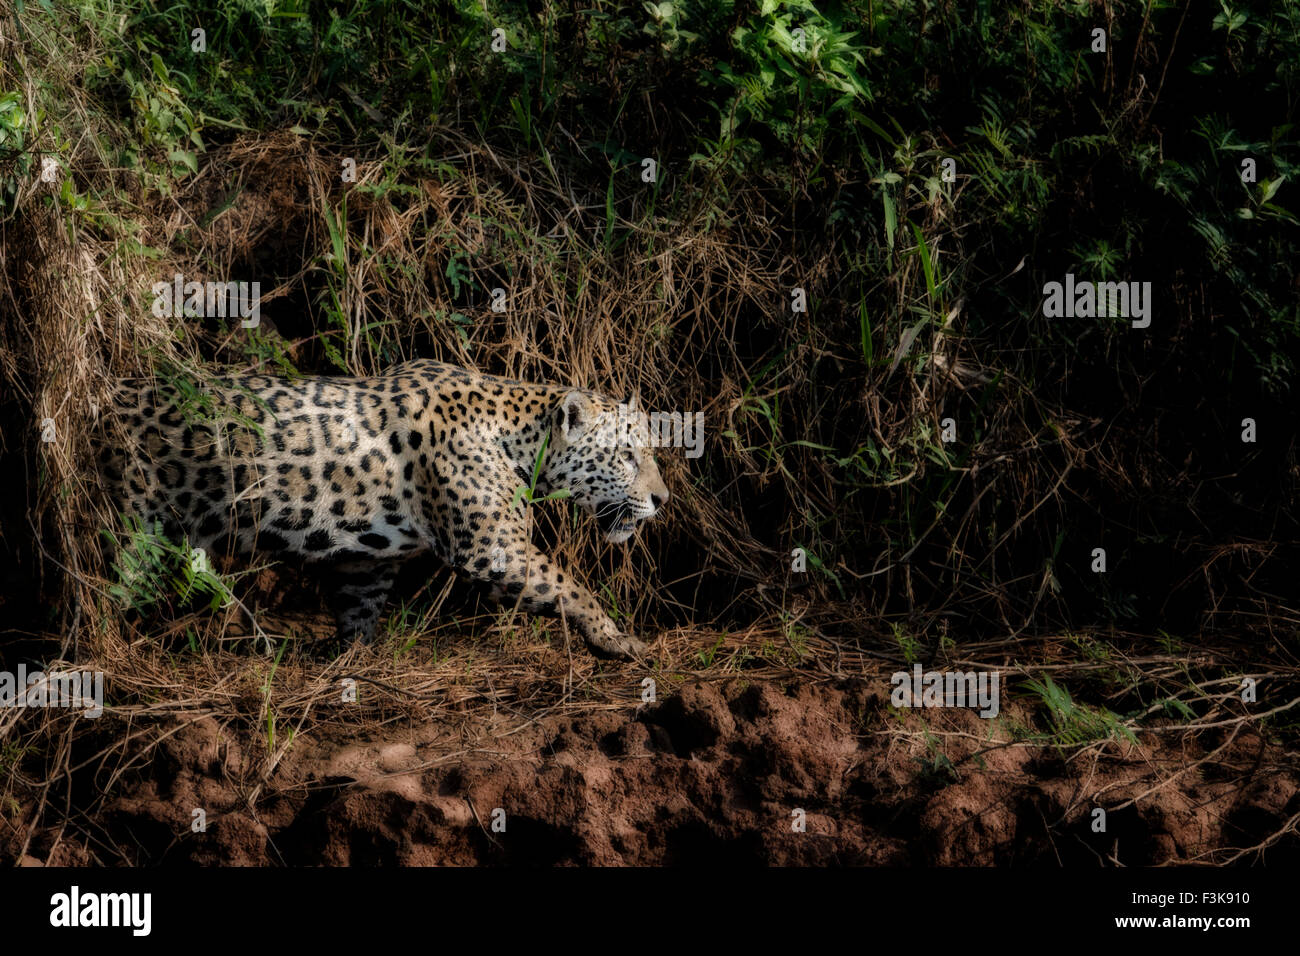 Profil d'une Jaguar, Panthera onca, chasse le long d'une rivière dans le Pantanal, Mato Grosso, Brésil, Amérique du Sud Banque D'Images